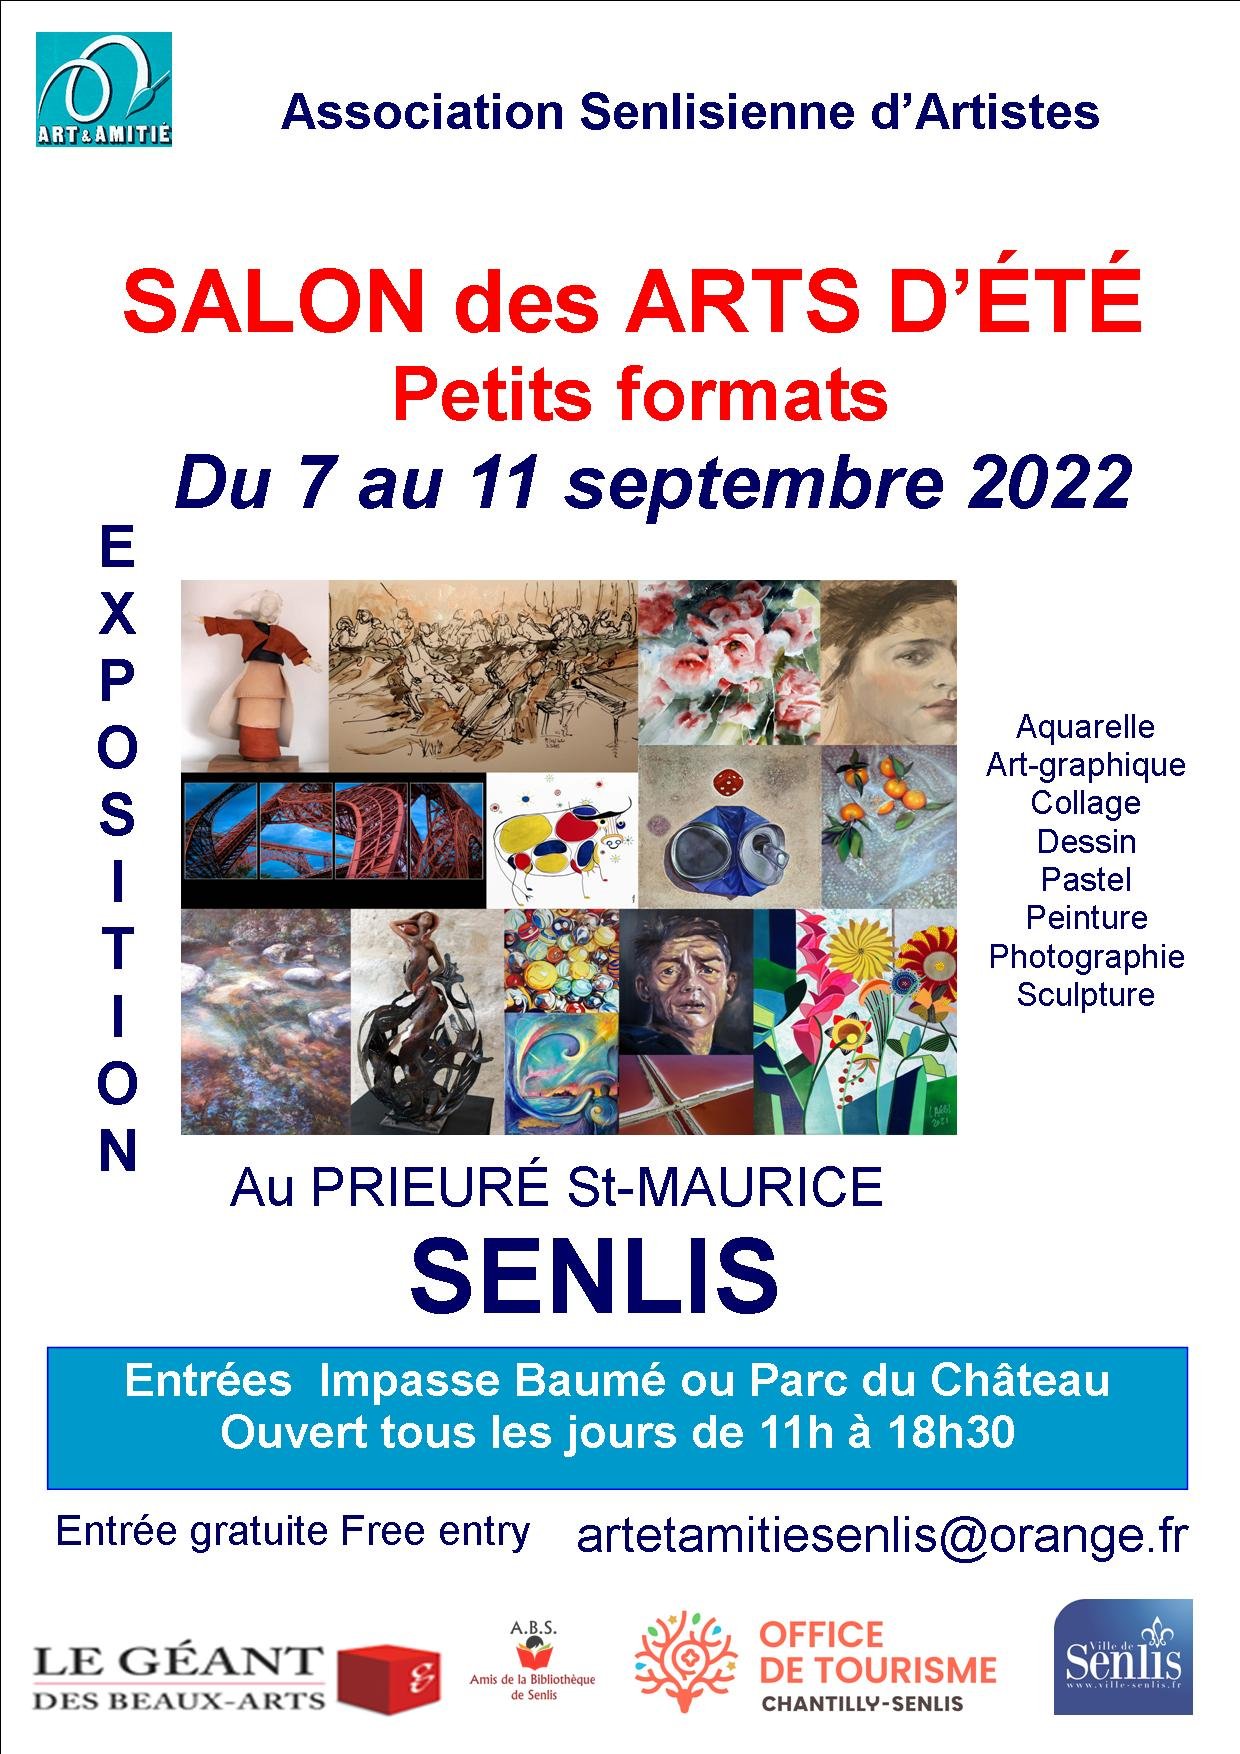 Salon des Arts d'été de Senlis